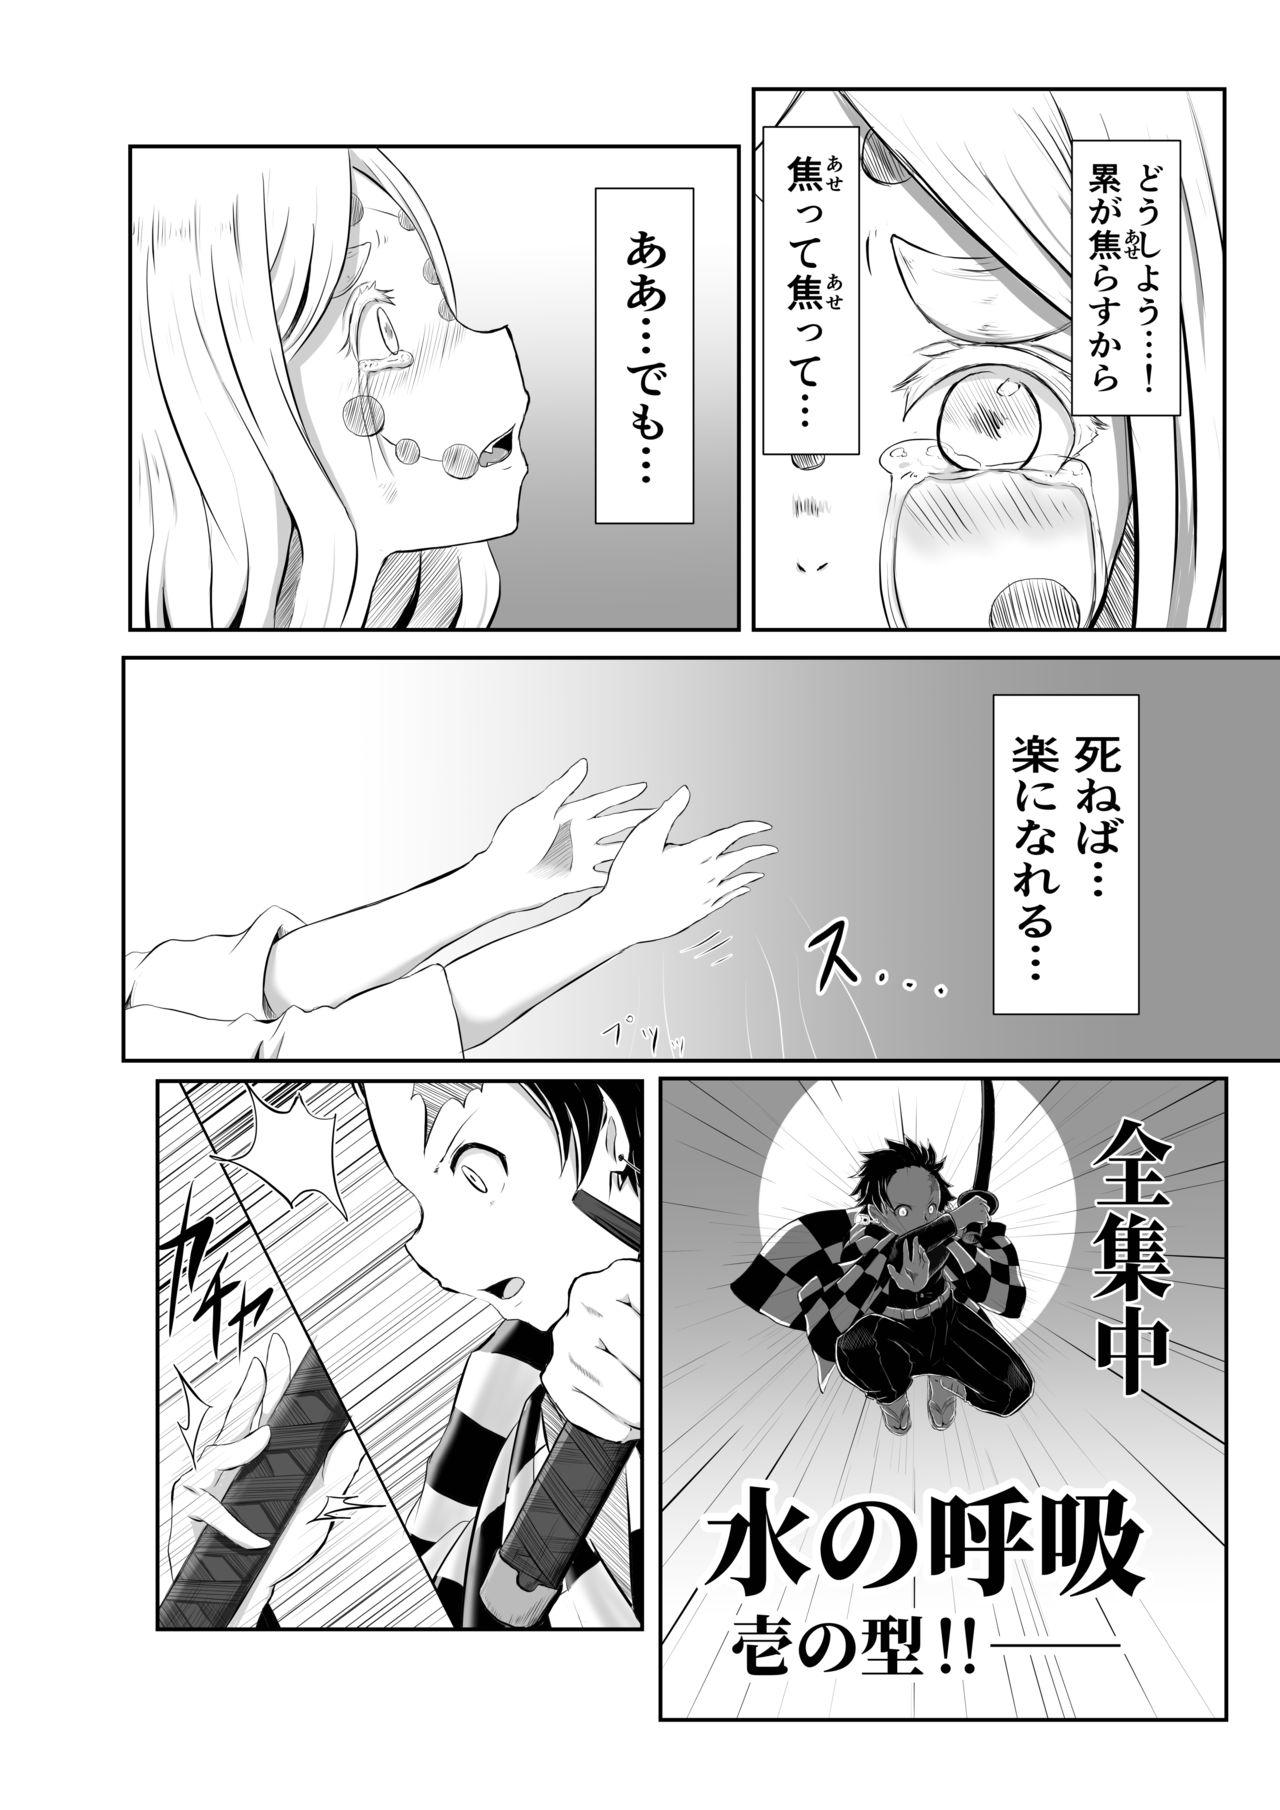 Secret Hinokami Sex. - Kimetsu no yaiba | demon slayer Ex Gf - Page 2